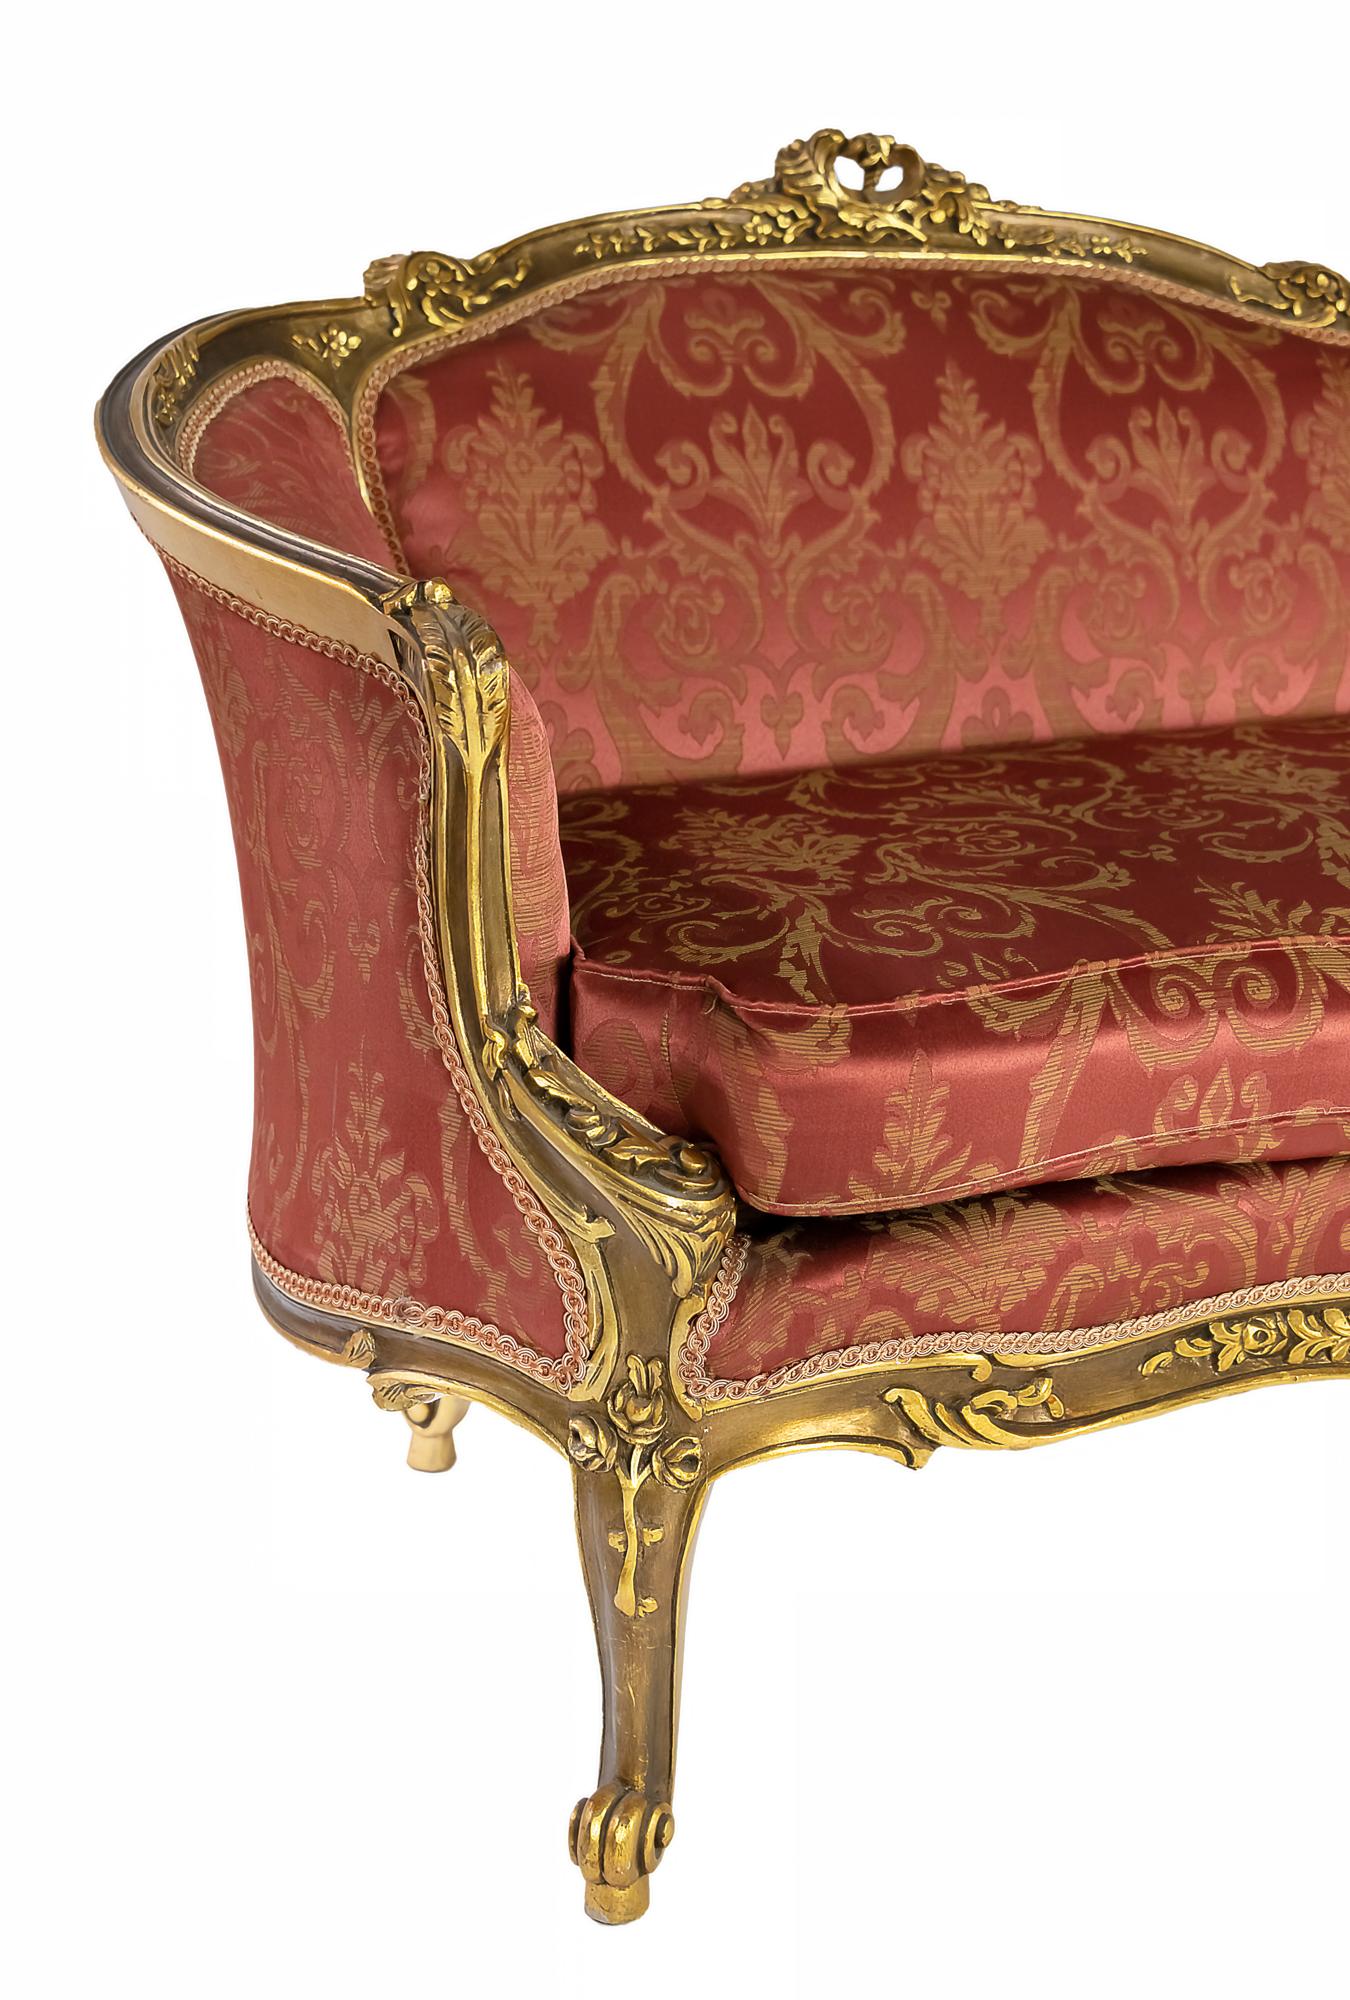 Causeuse canapé en bois doré, fabriqué à la main en France, vers les années 1950.
Le canapé est tapissé d'un motif damassé de couleur rouge et or.
Très bon état vintage.